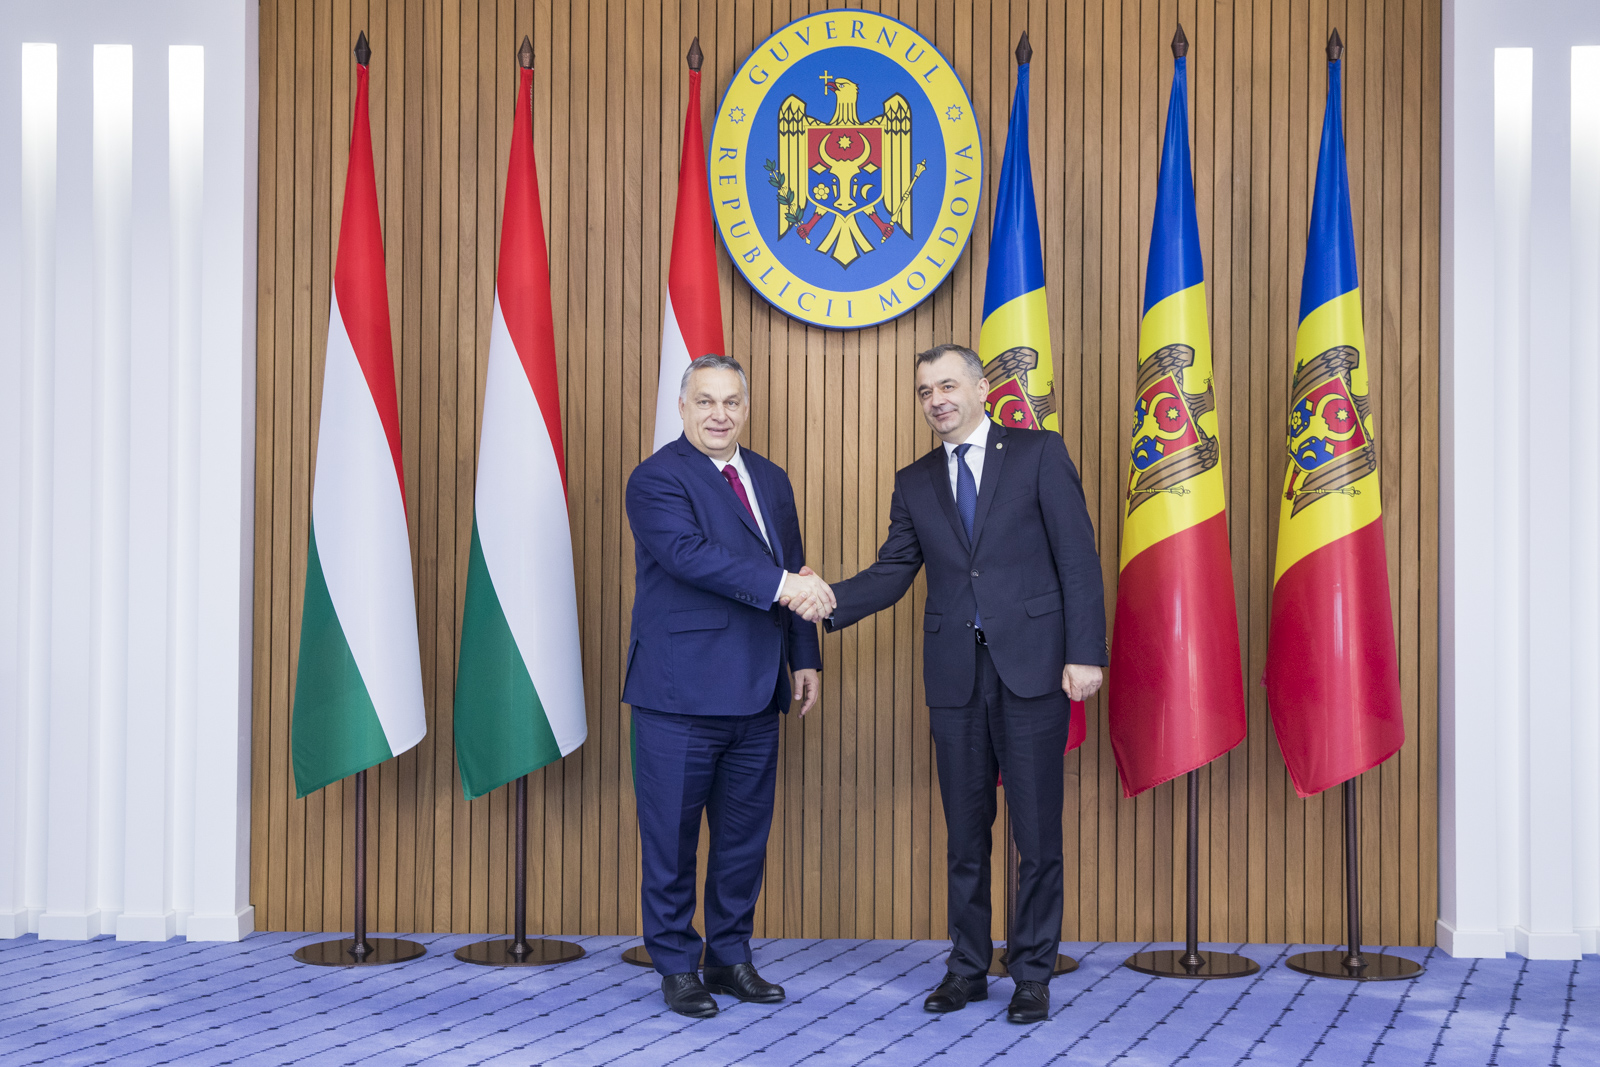 Declarația Comună pentru Parteneriat Strategic între Republica Moldova și Ungaria, semnată